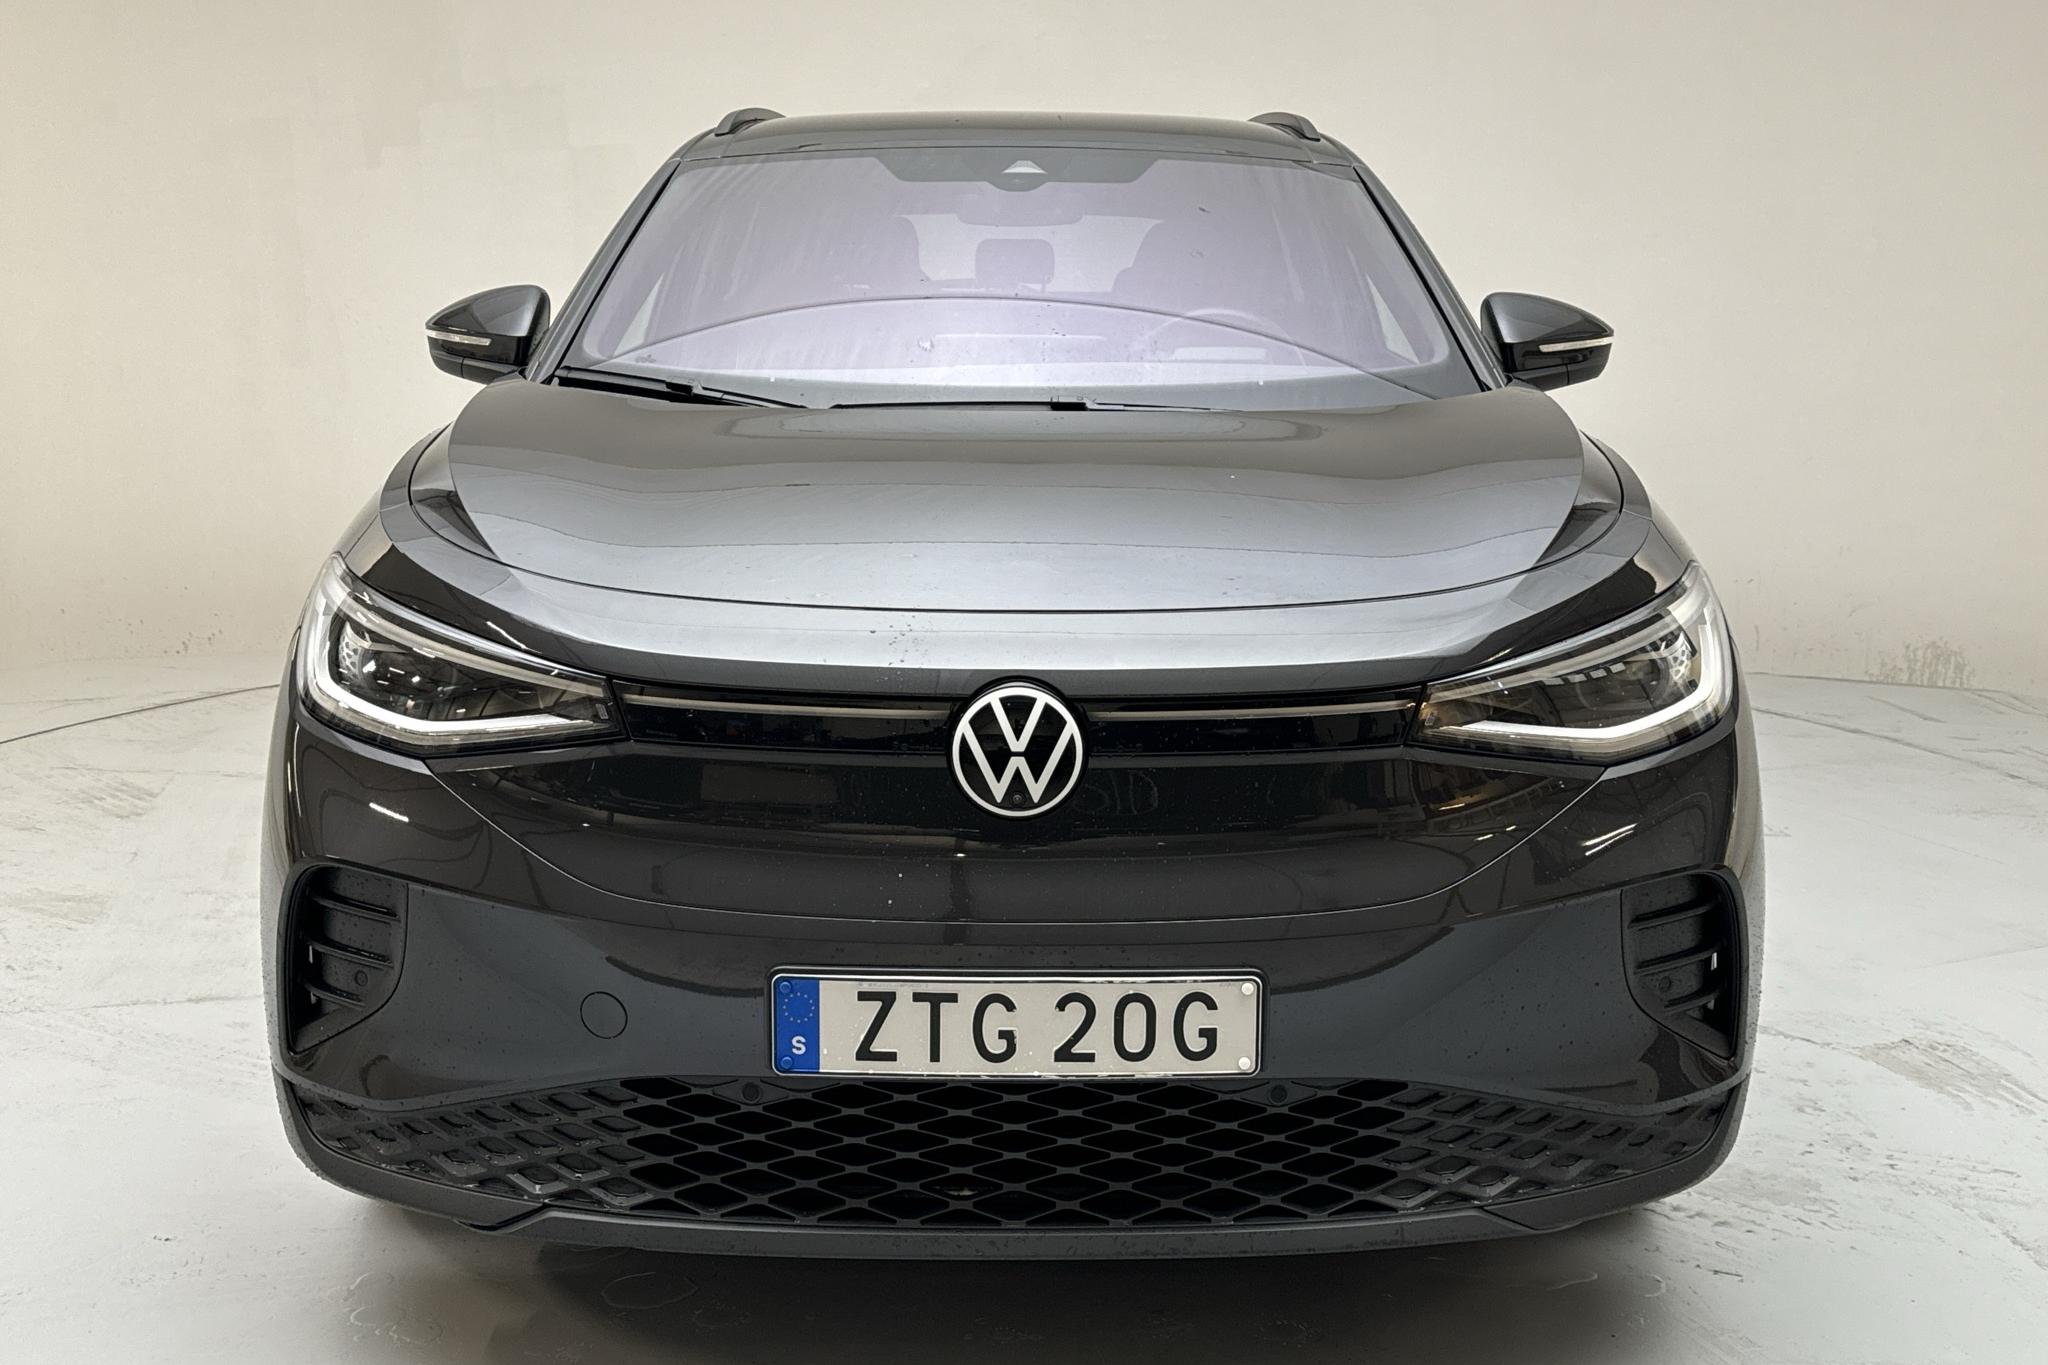 VW ID.4 77kWh (204hk) - 70 160 km - Automatyczna - Dark Grey - 2021